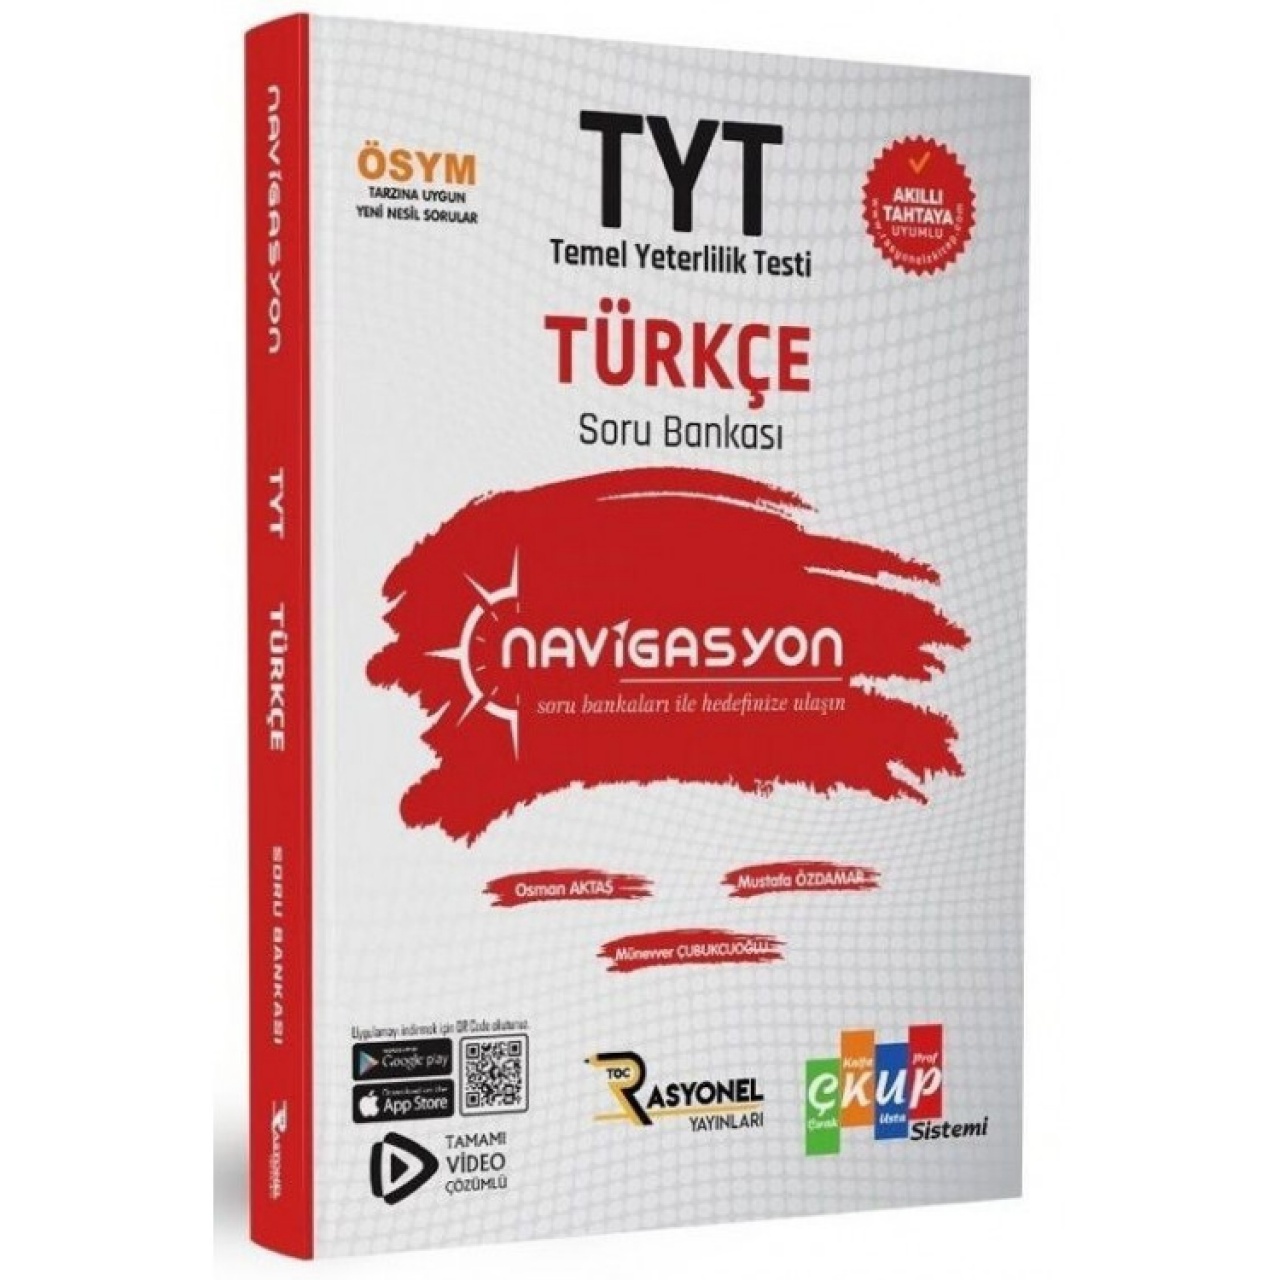 TYT Türkçe Navigasyon Soru Bankası Rasyonel Yayınları